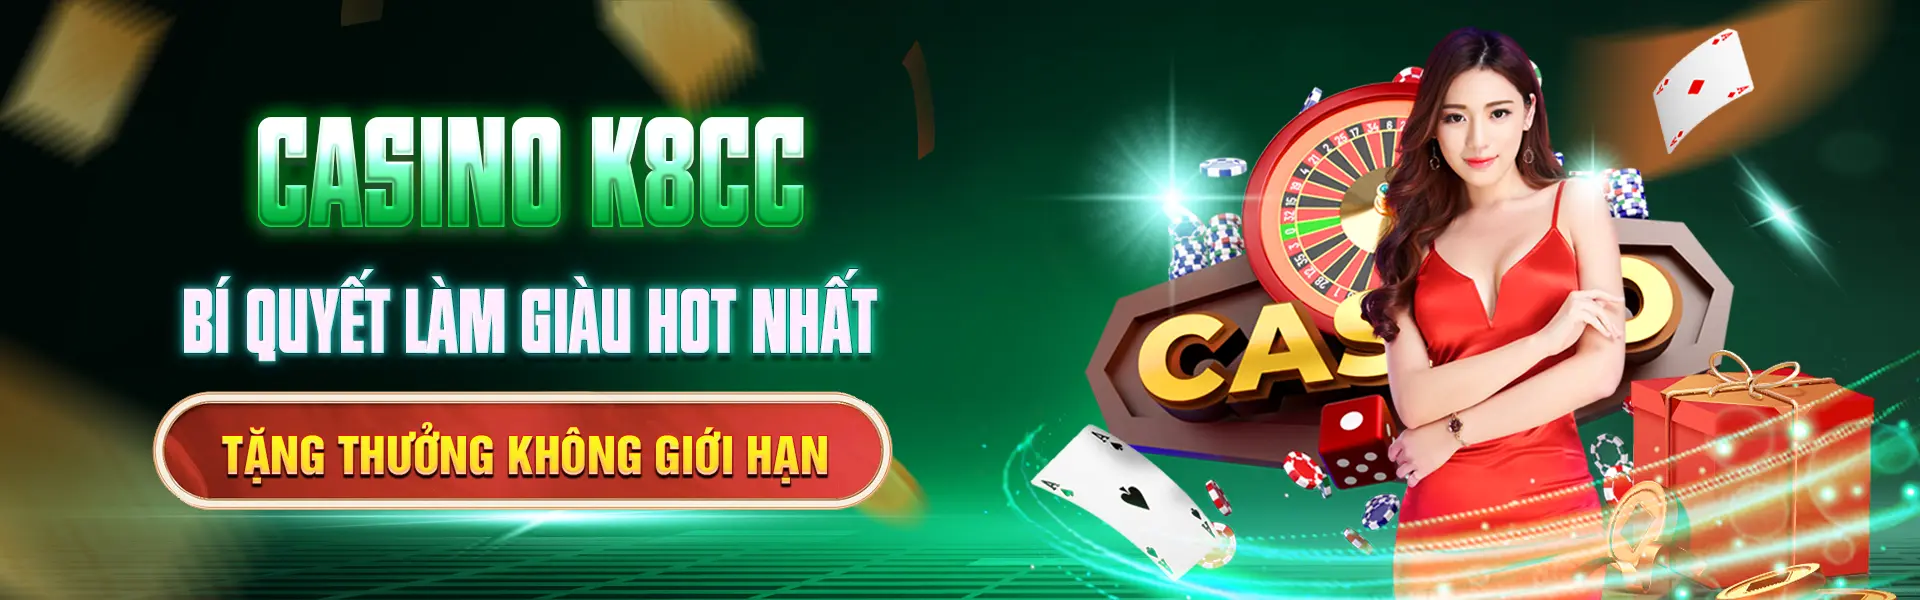 casino-k8cc-bi-quyet-lam-giau-hot-nhat-tang-thuong-khong-gioi-han